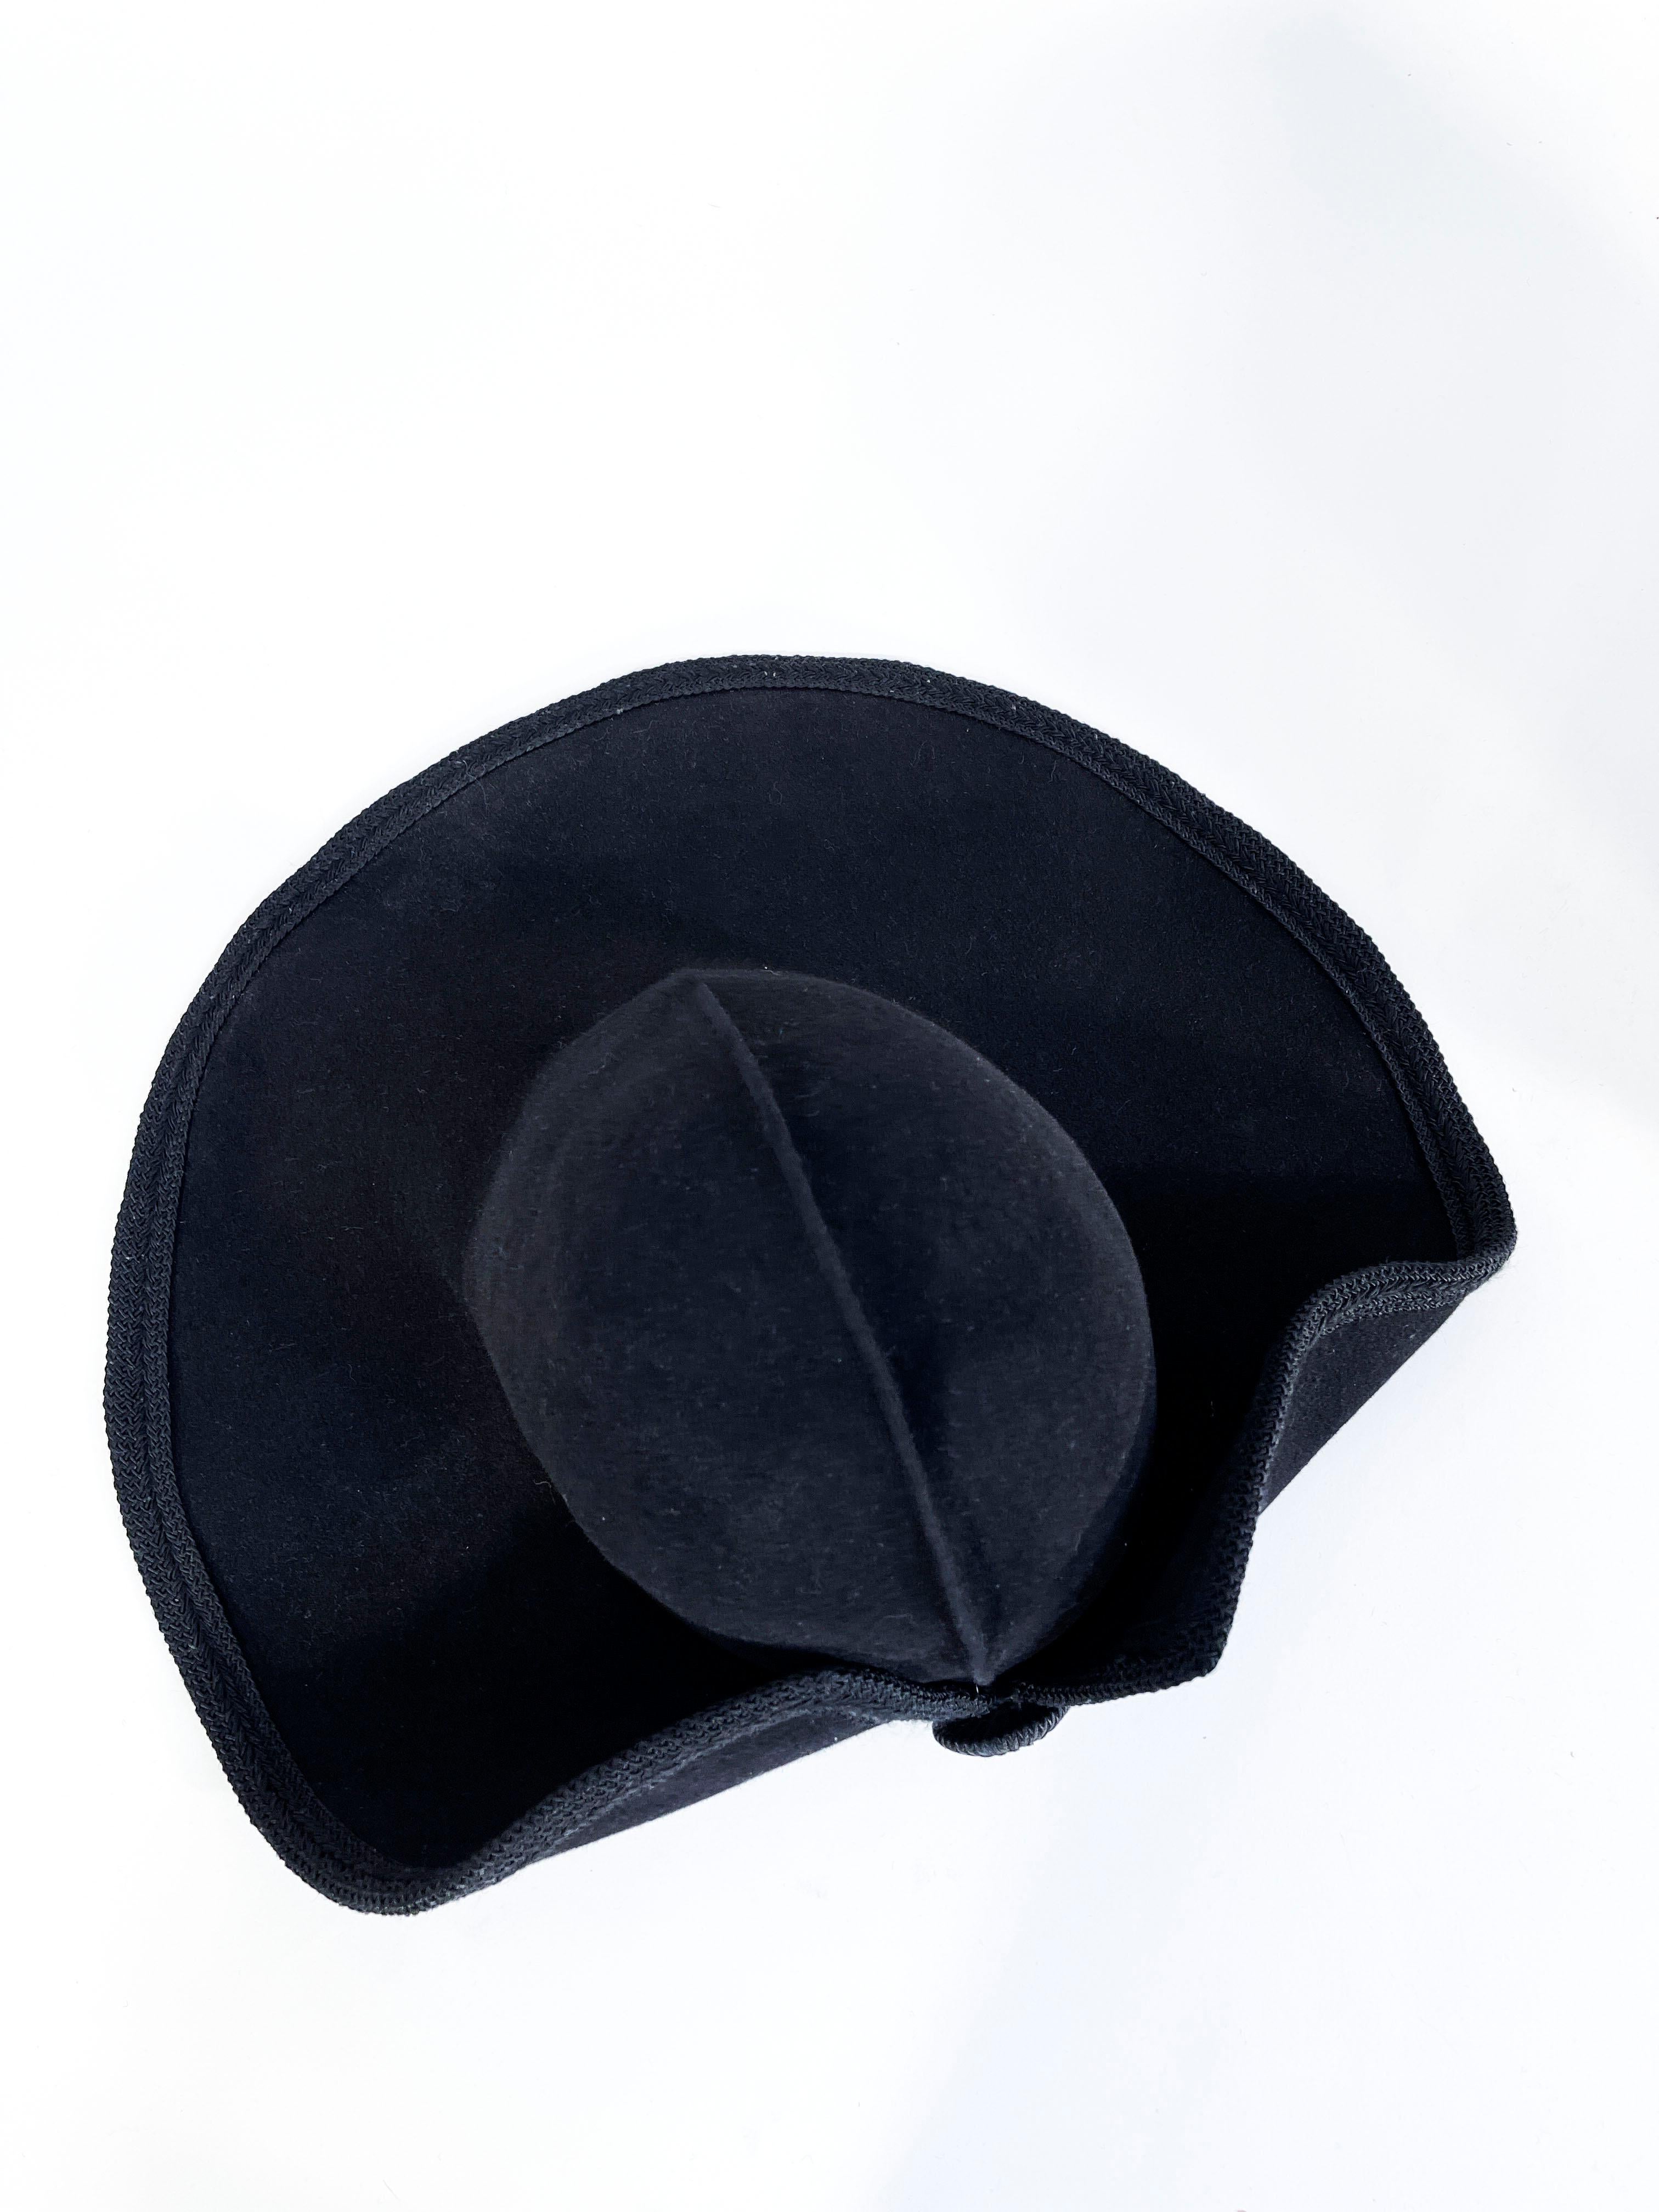 Women's 1990s Kokin Black Wide Brimmed Hat